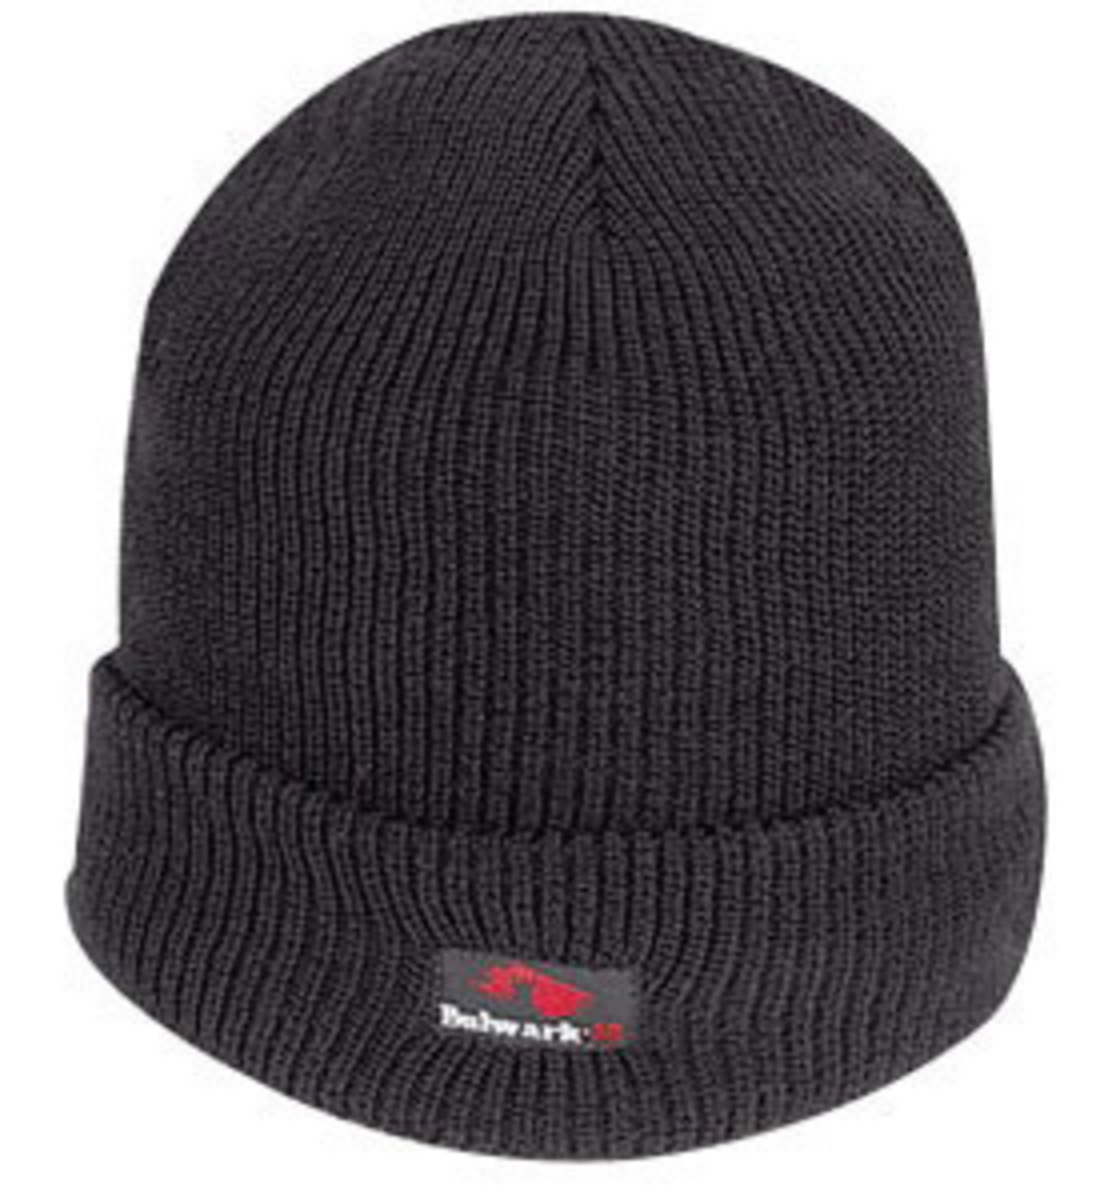 National Safety Apparel Regular Black DuPont™ Nomex® Knit Flame Resistant Winter Hat